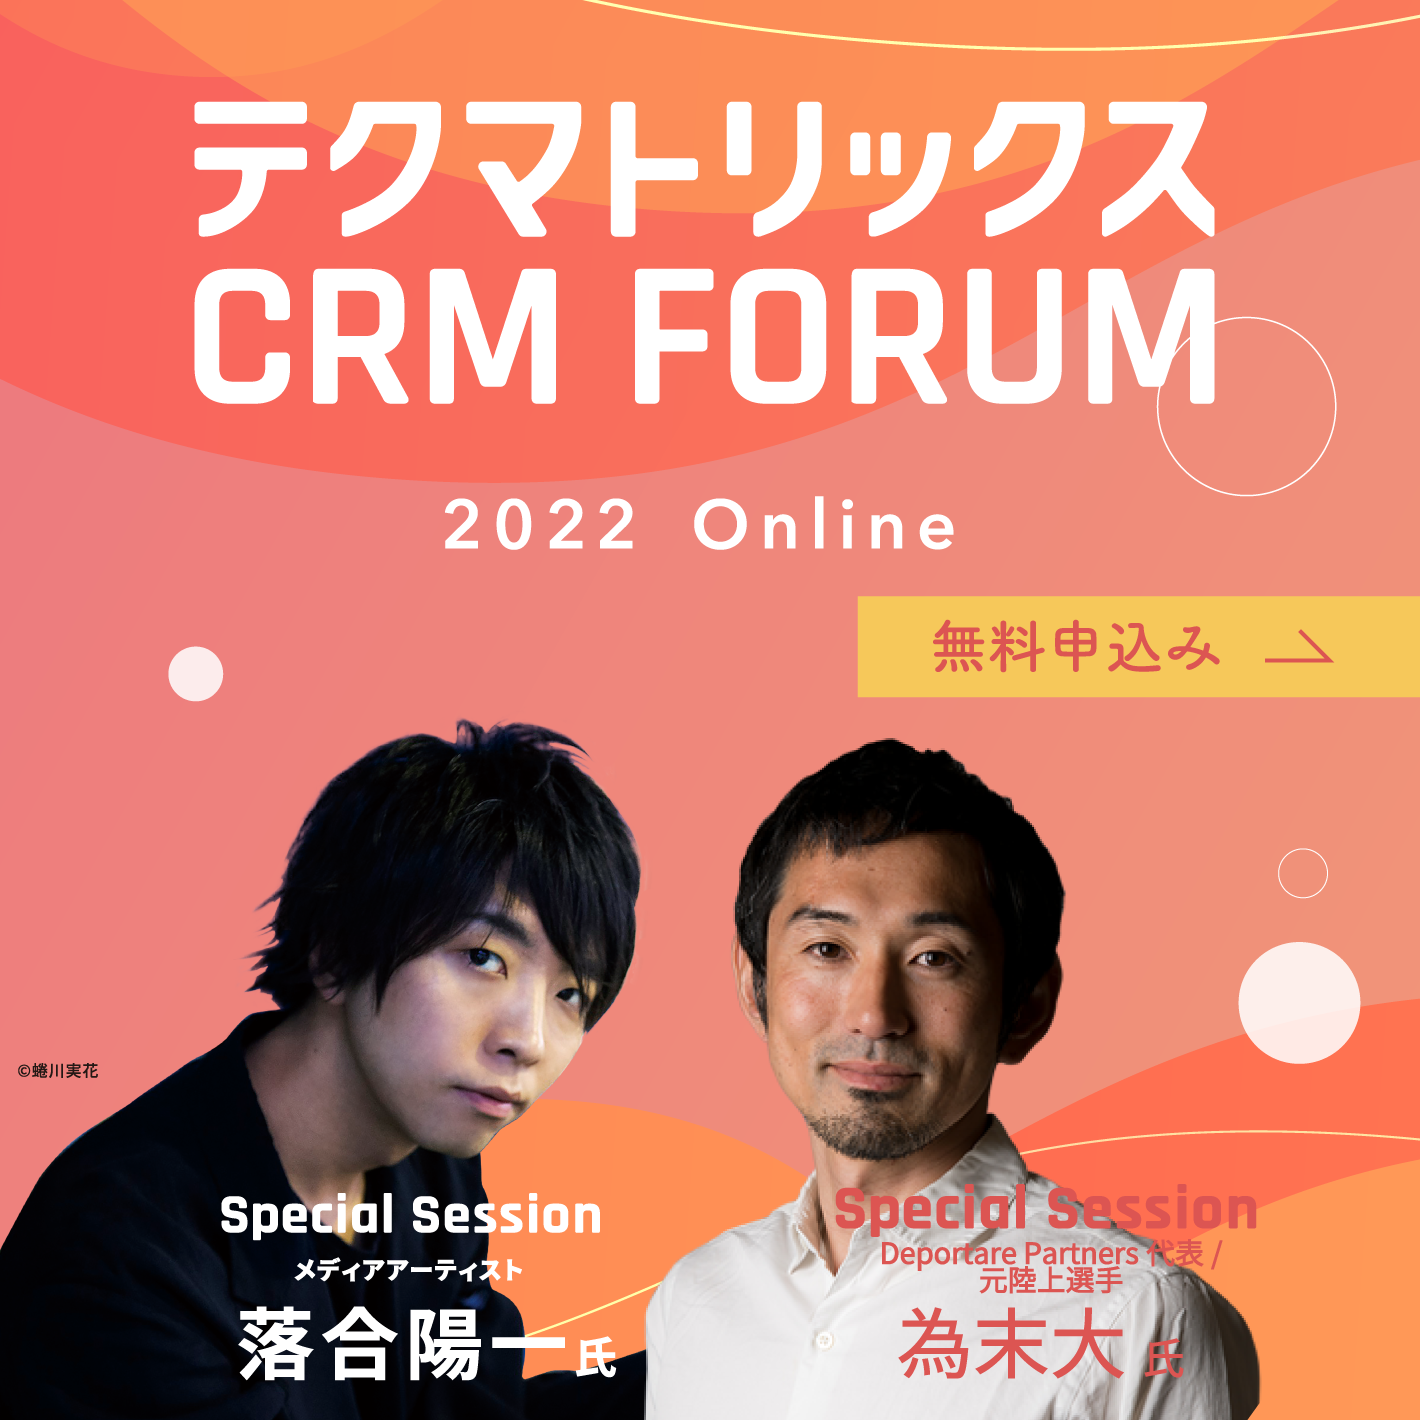 テクマトリックス CRM FORUM 2022 参加登録（無料）受付中